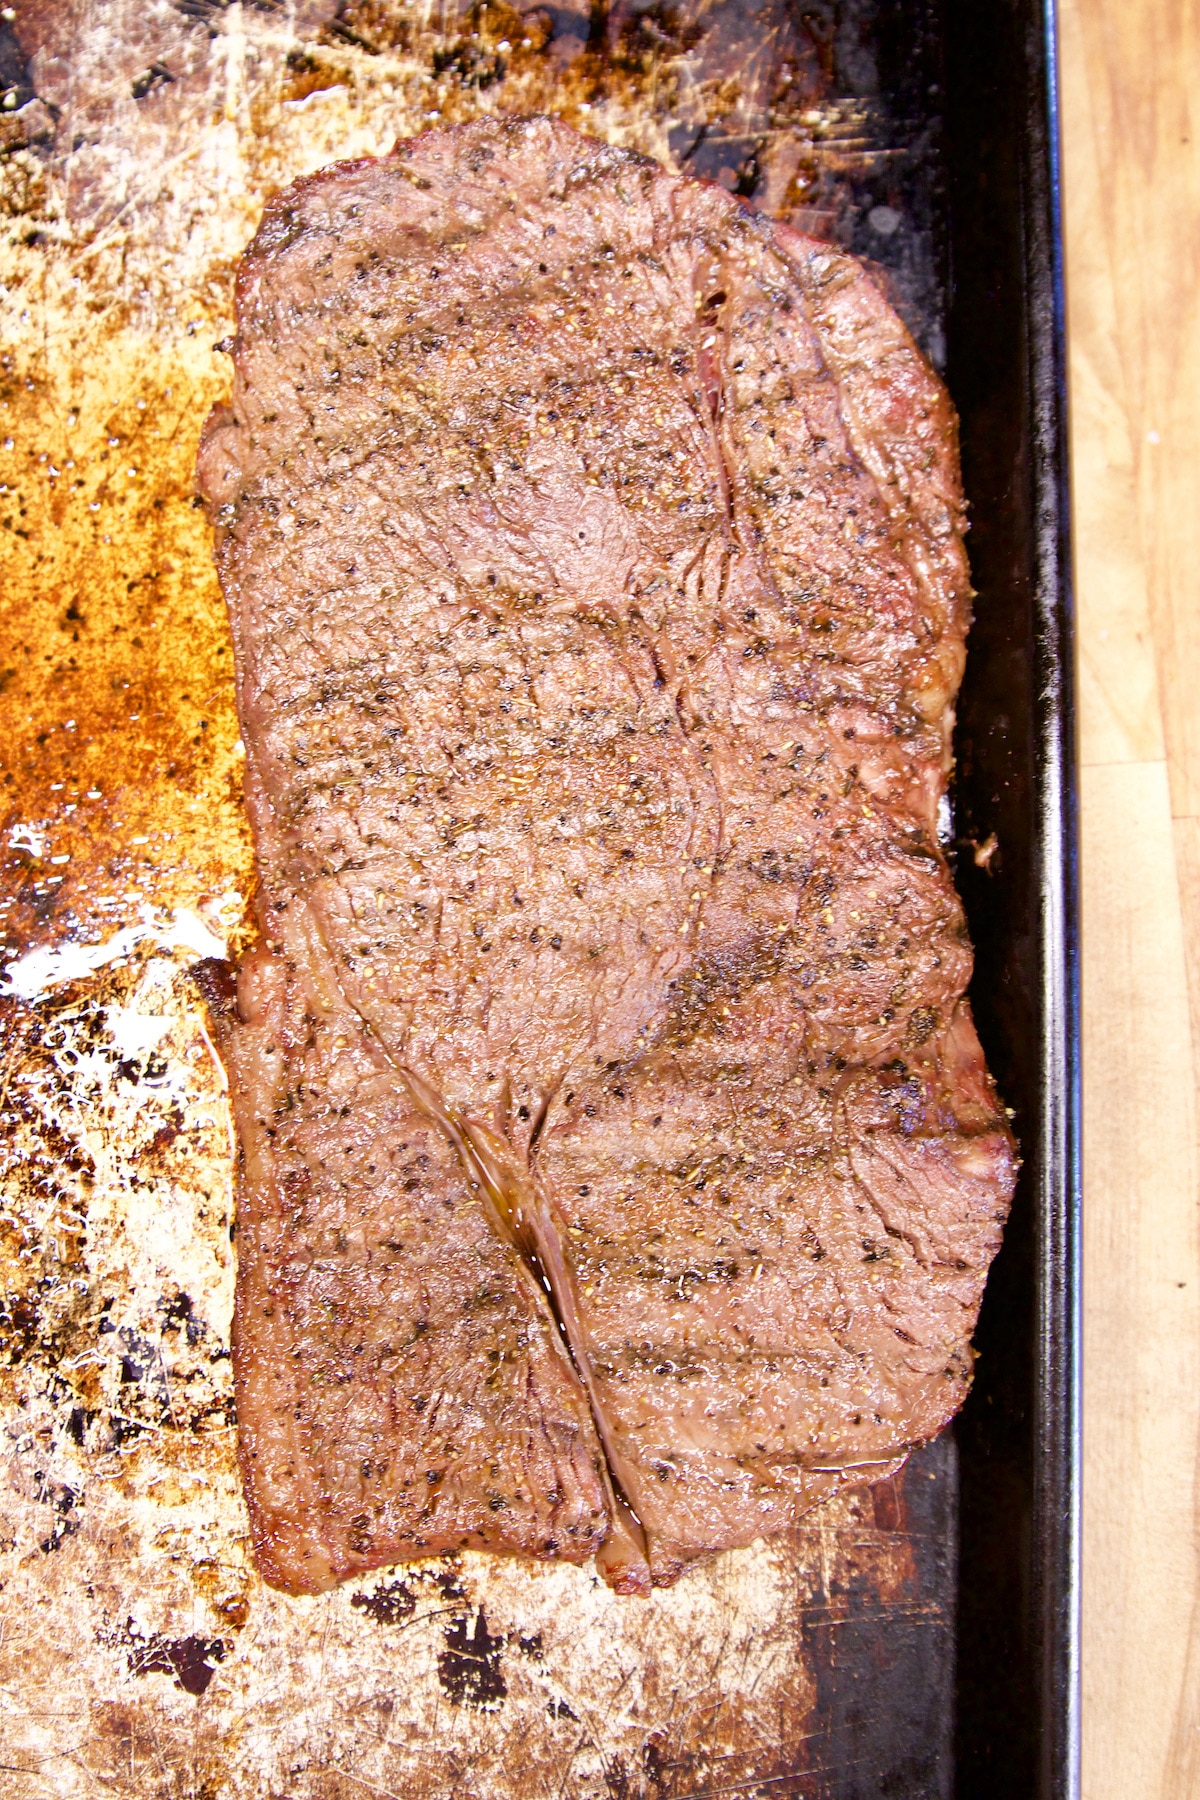 Grilled steak resting on a rimmed baking sheet.